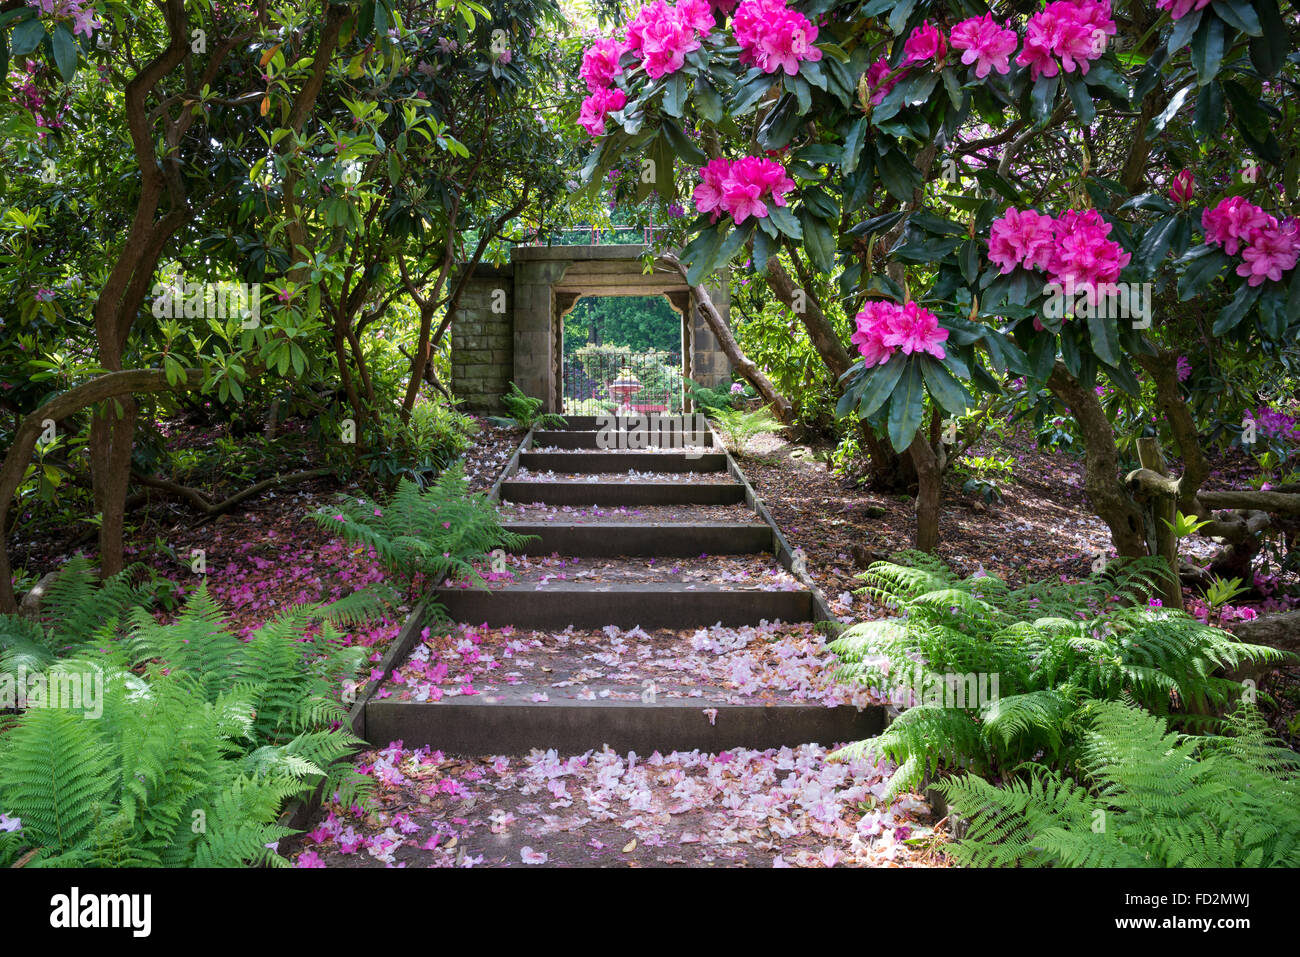 Ingresso giardino fiorito immagini e fotografie stock ad alta risoluzione -  Alamy